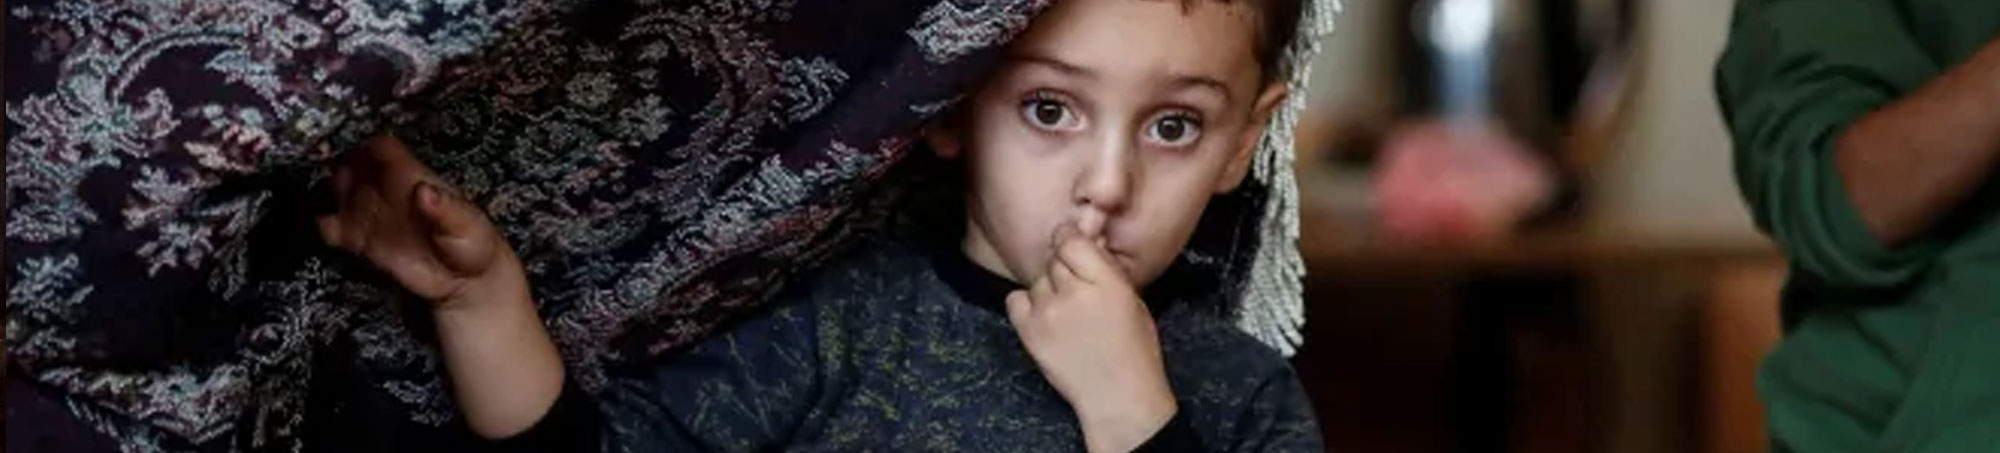 Karabakh refugee child troubled by Azerbaijian-Turkey agression. Artsakh (Nagorno Karabakh)